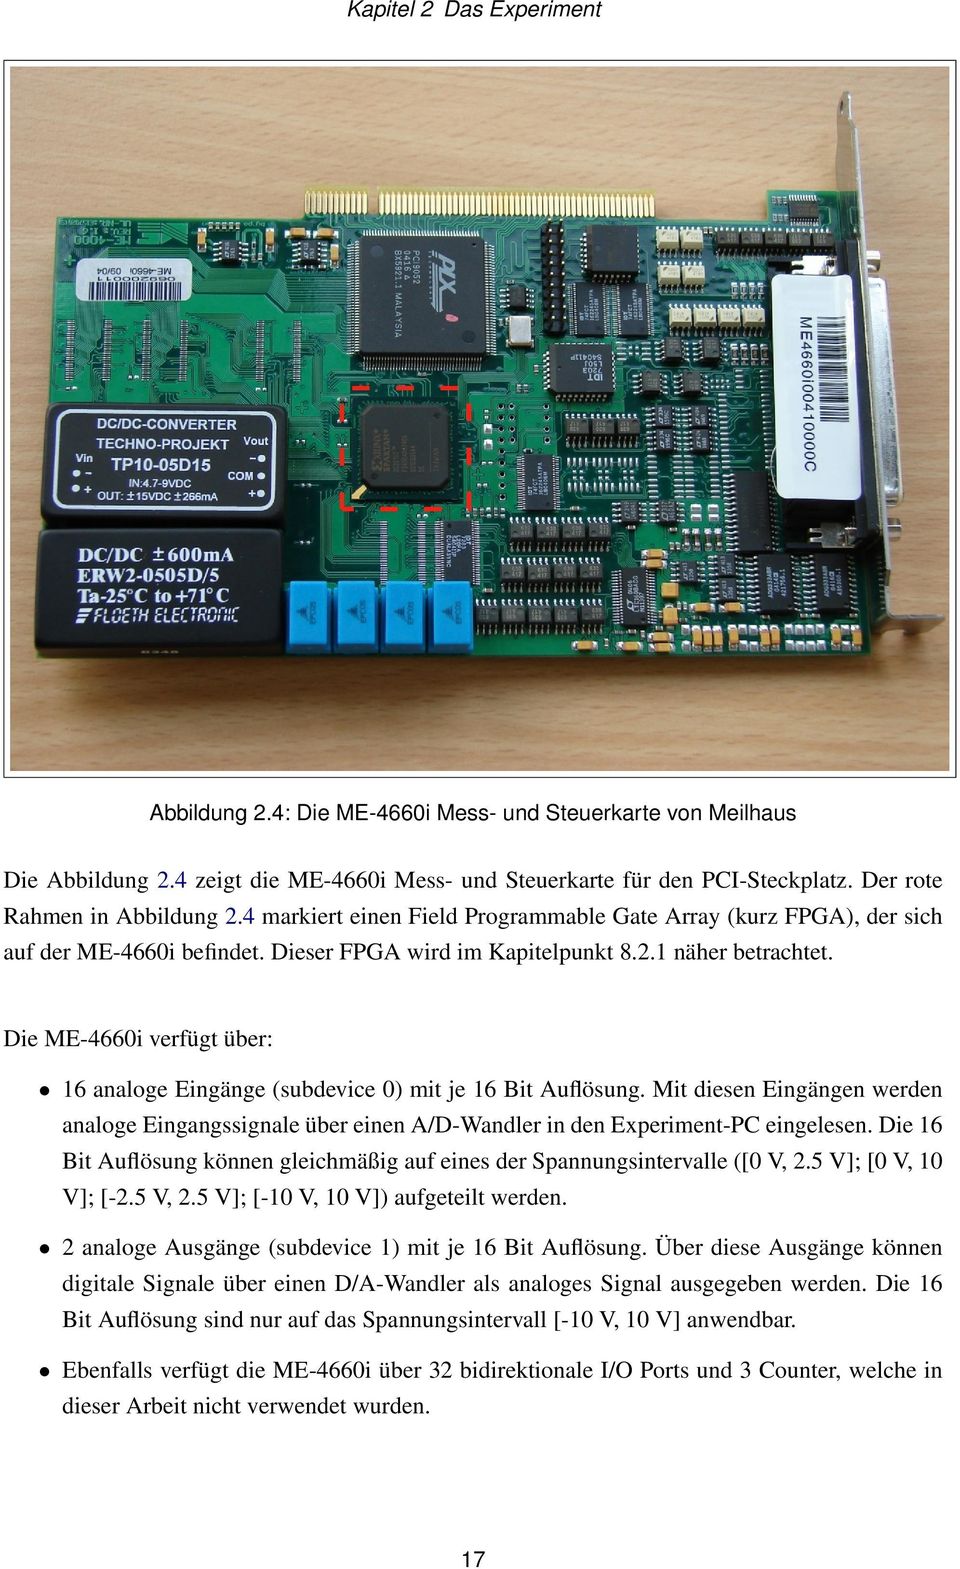 Die ME-4660i verfügt über: 16 analoge Eingänge (subdevice 0) mit je 16 Bit Auflösung. Mit diesen Eingängen werden analoge Eingangssignale über einen A/D-Wandler in den Experiment-PC eingelesen.